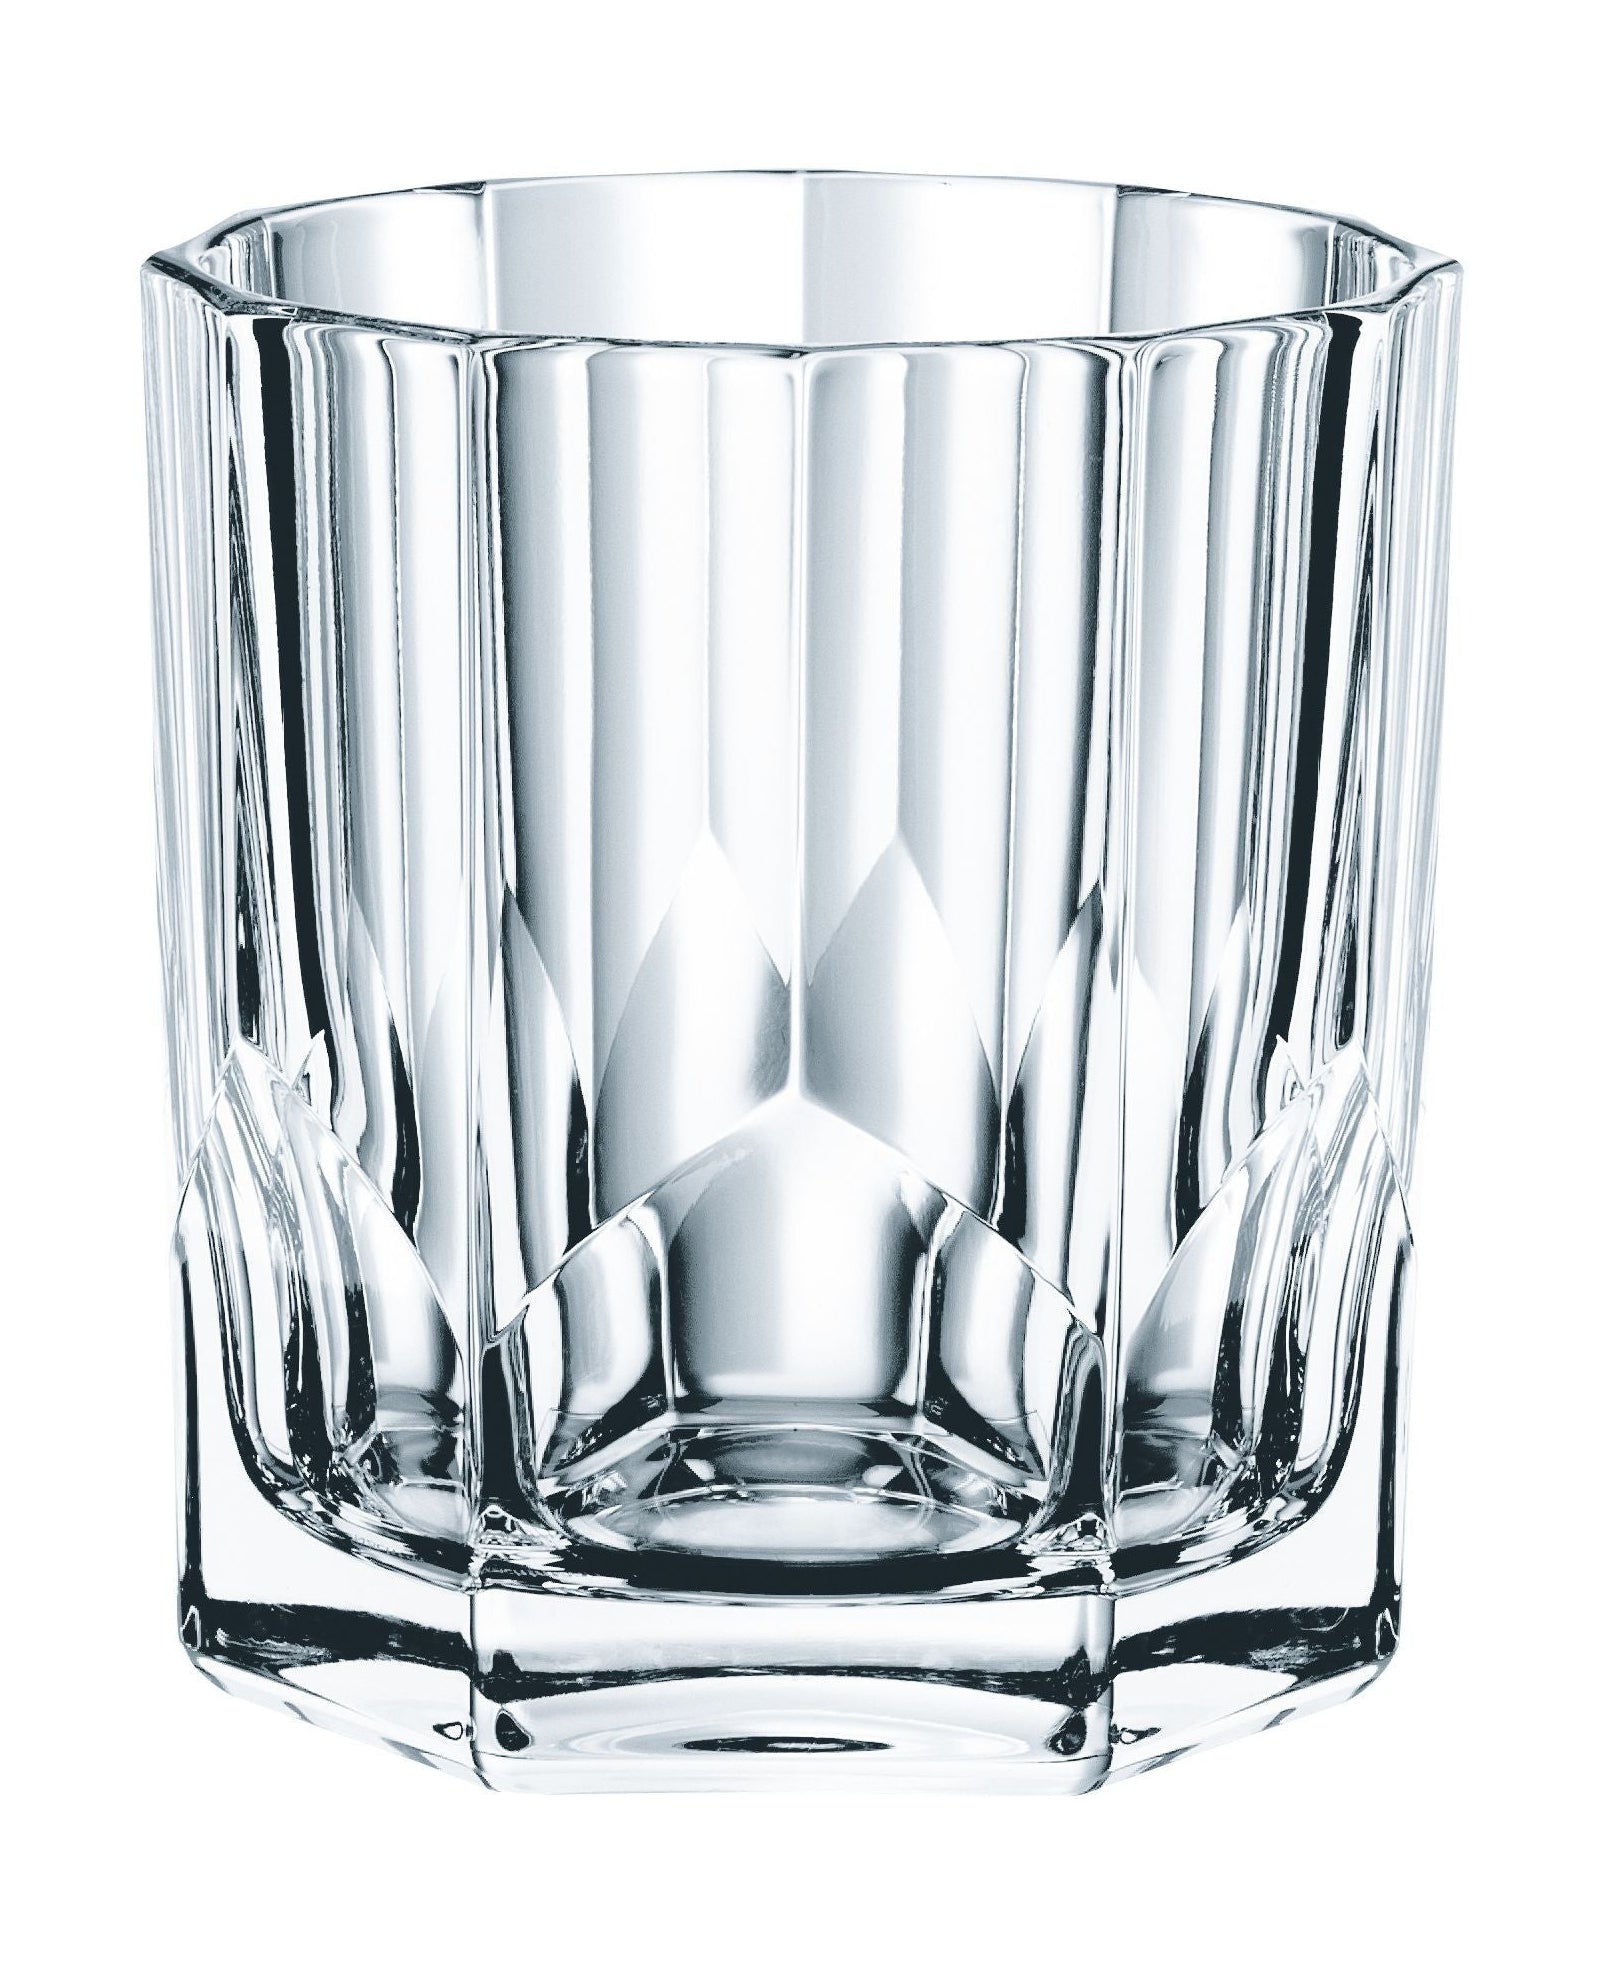 Nachtmann Aspen Whiskyglas 324 ml, Satz von 4